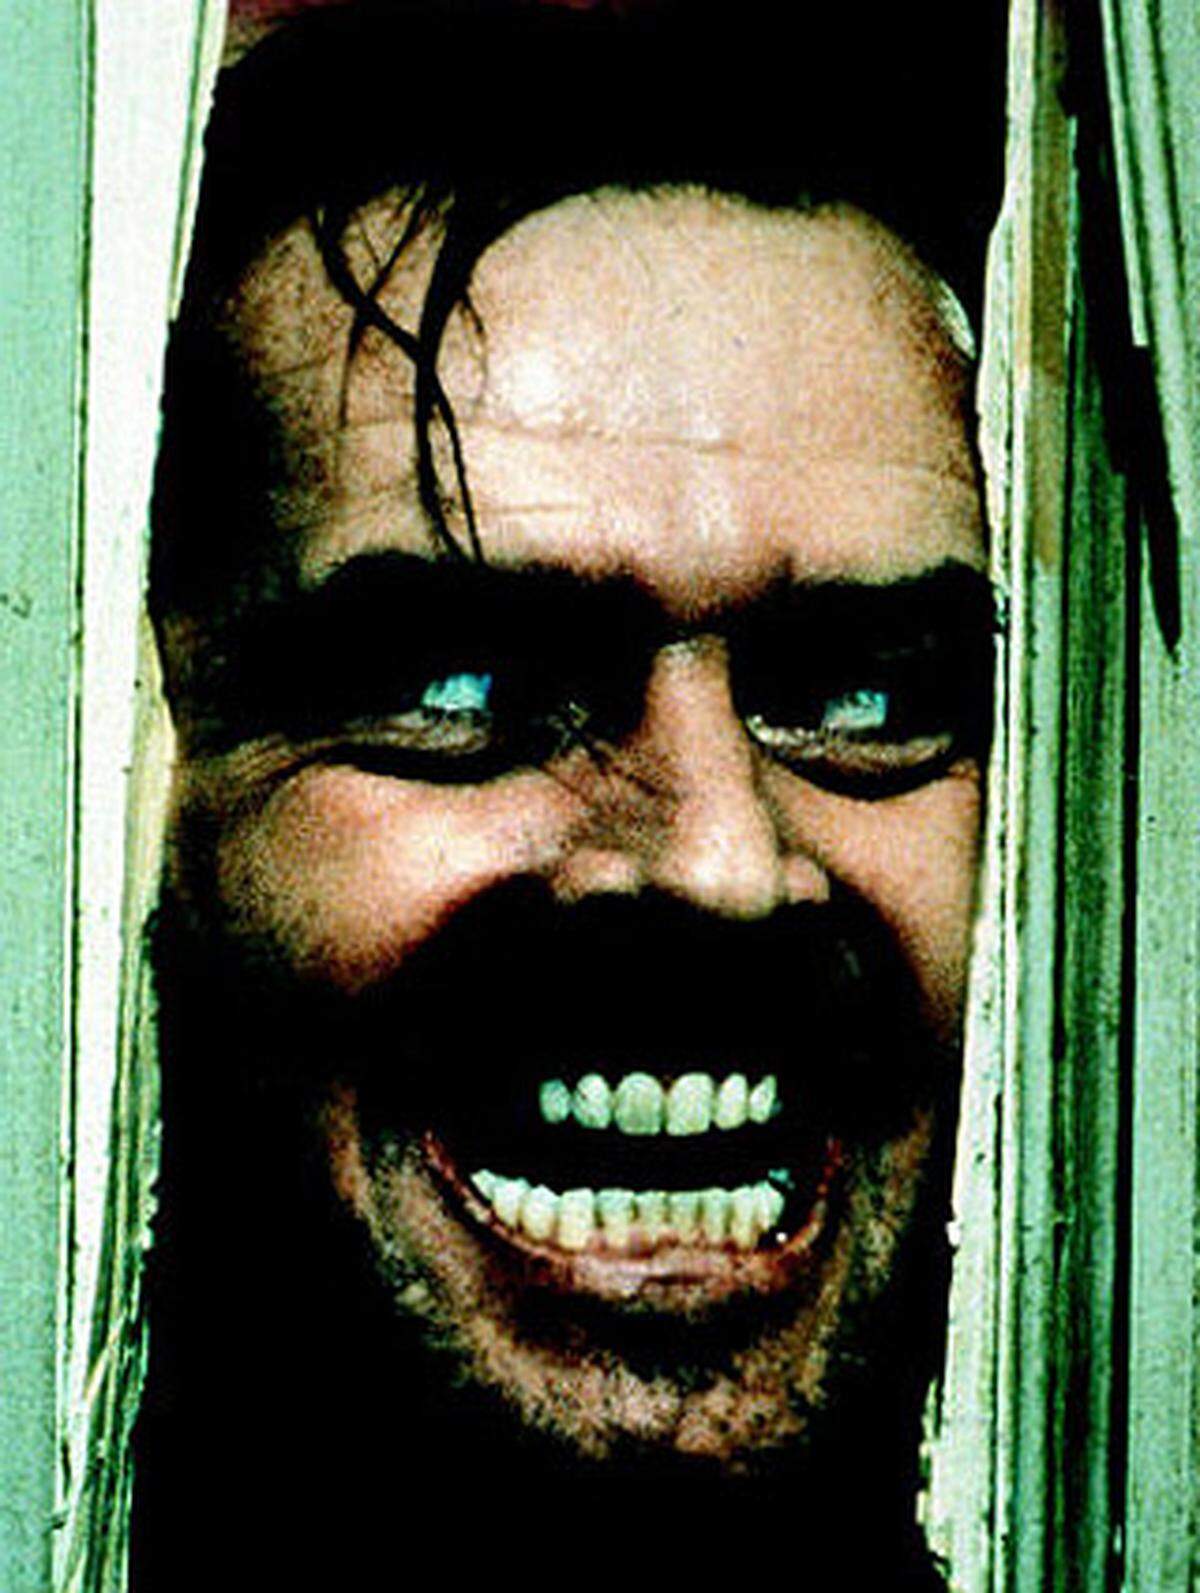 Jack Nicholson wurde in seiner Rolle als in den Wahnsinn abgleitender Schriftsteller Jack Torrance "The Shining" (1981) unsterblich. Meisterregisseur Stanley Kubrick setzte das psychologische Drama in einem verlassenen Hotel perfekt in Szene.